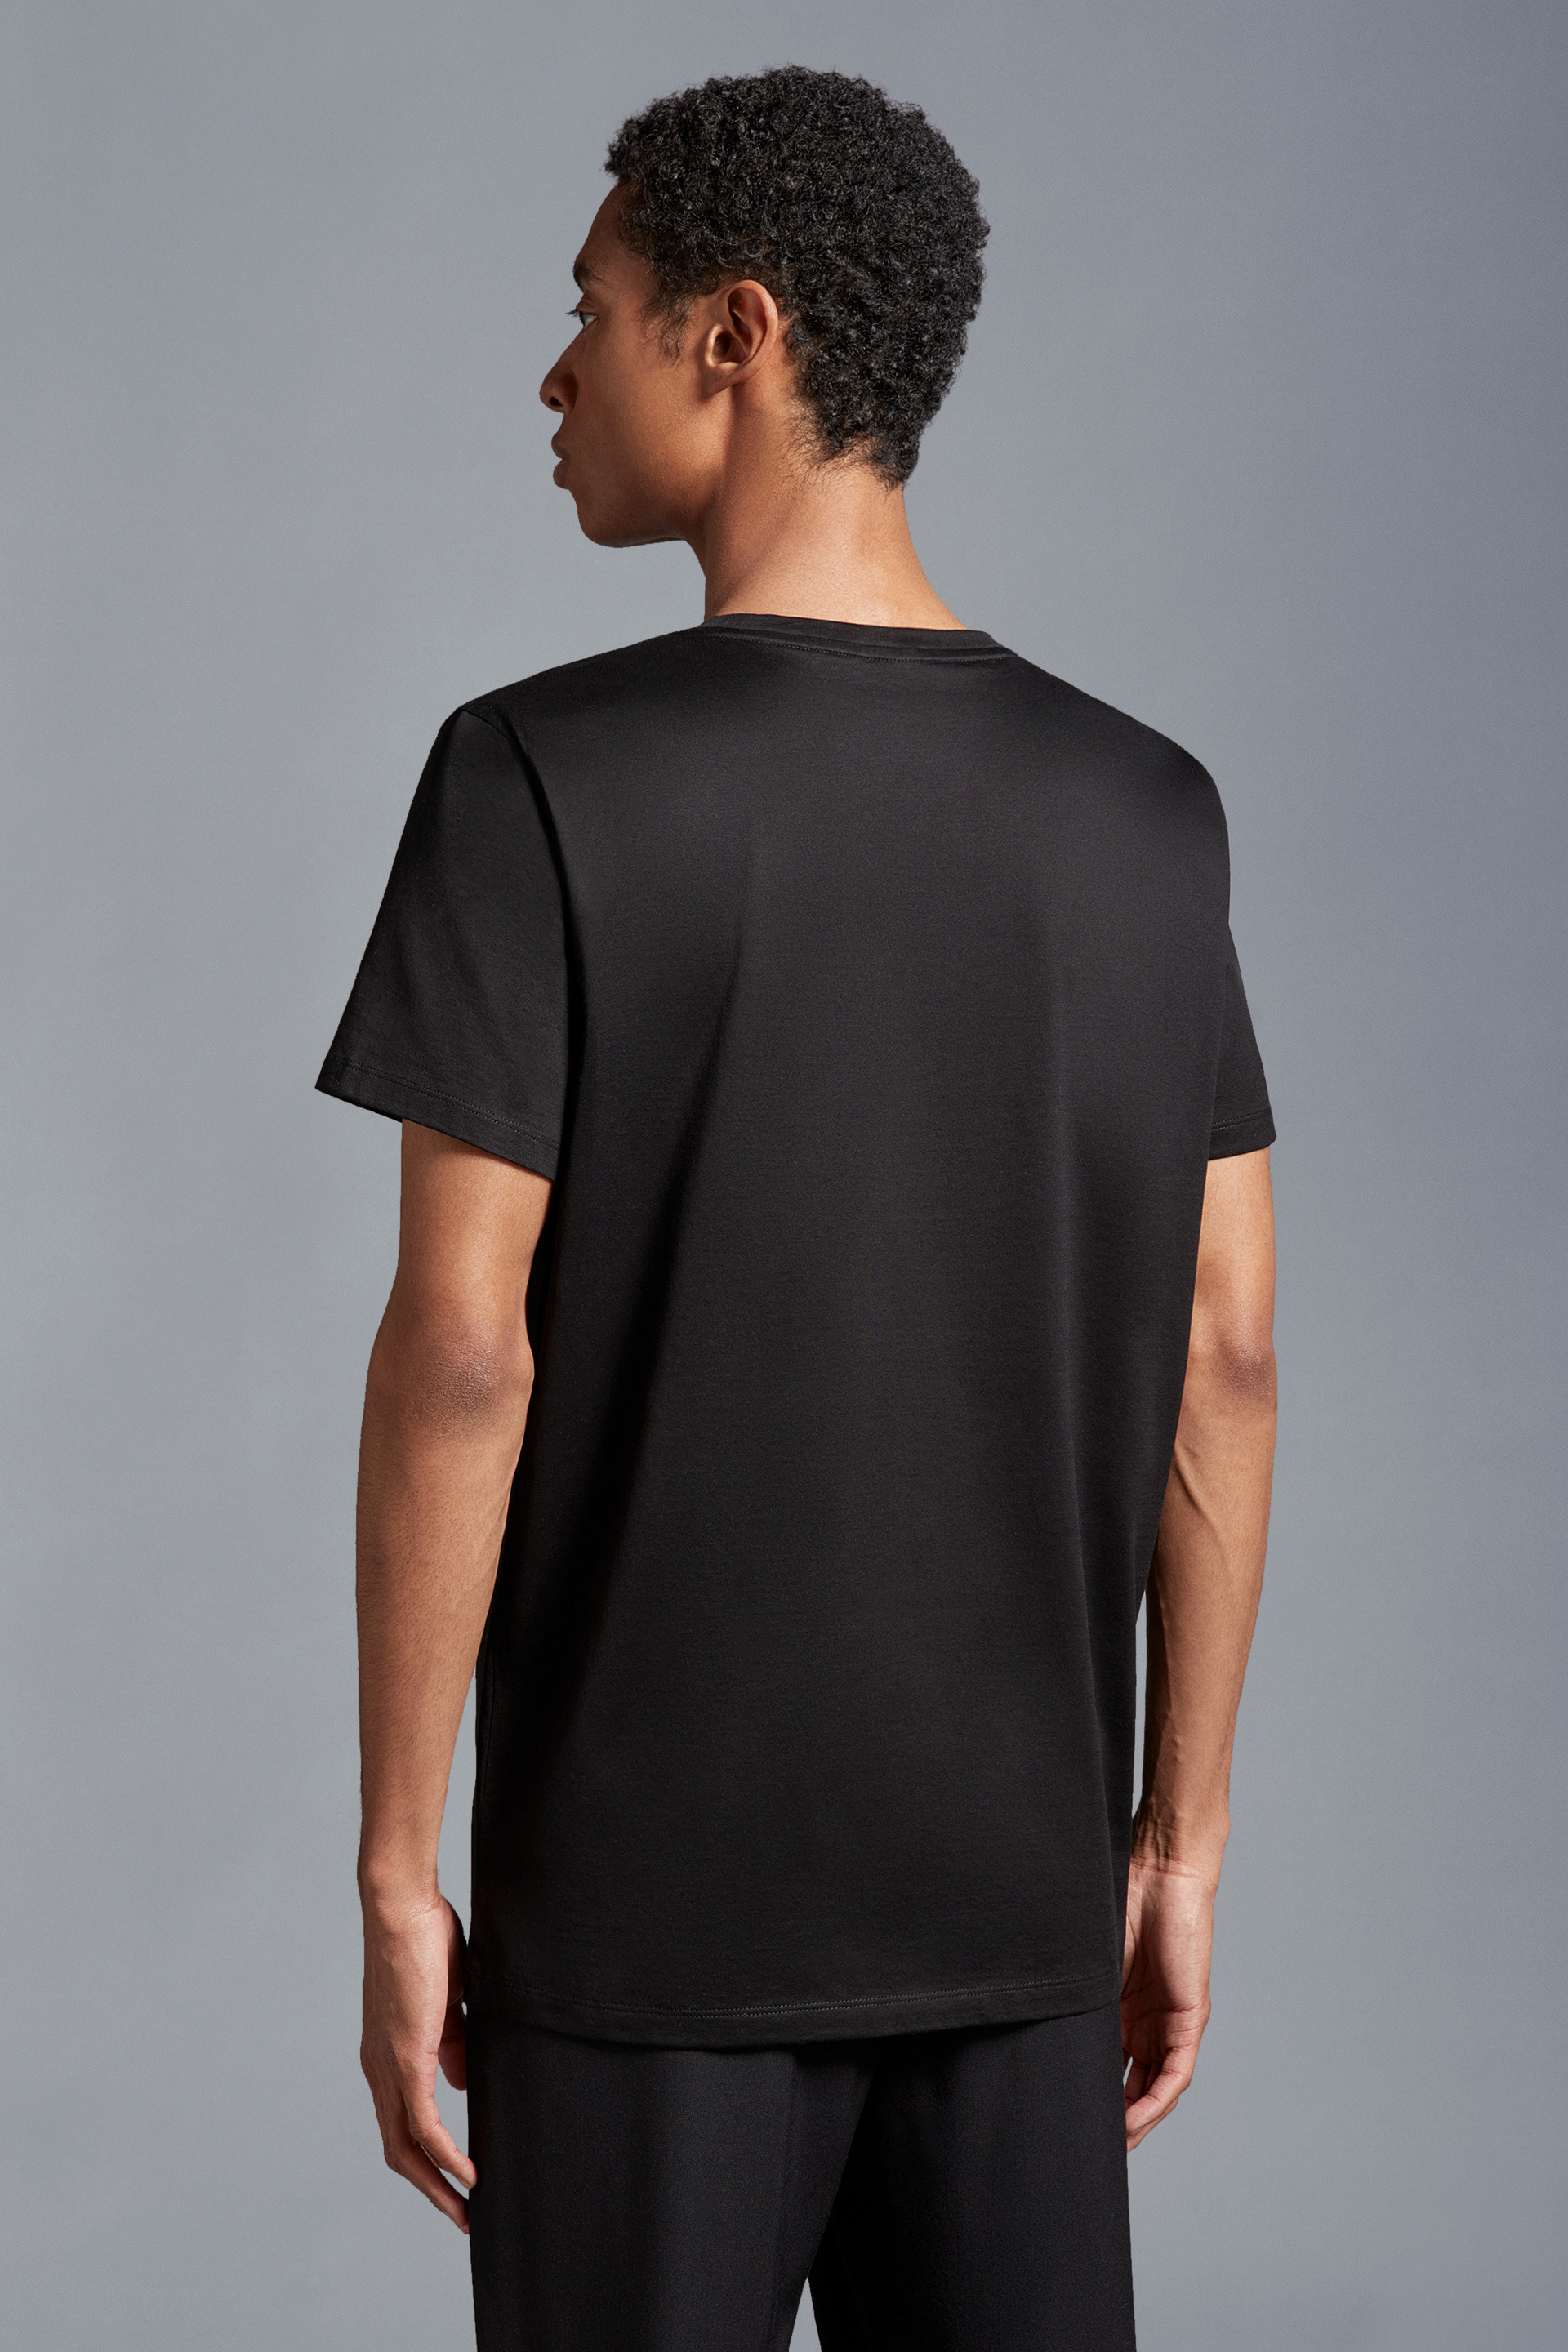 モンクレール Sサイズ スリムフィット 黒 Tシャツ - Tシャツ